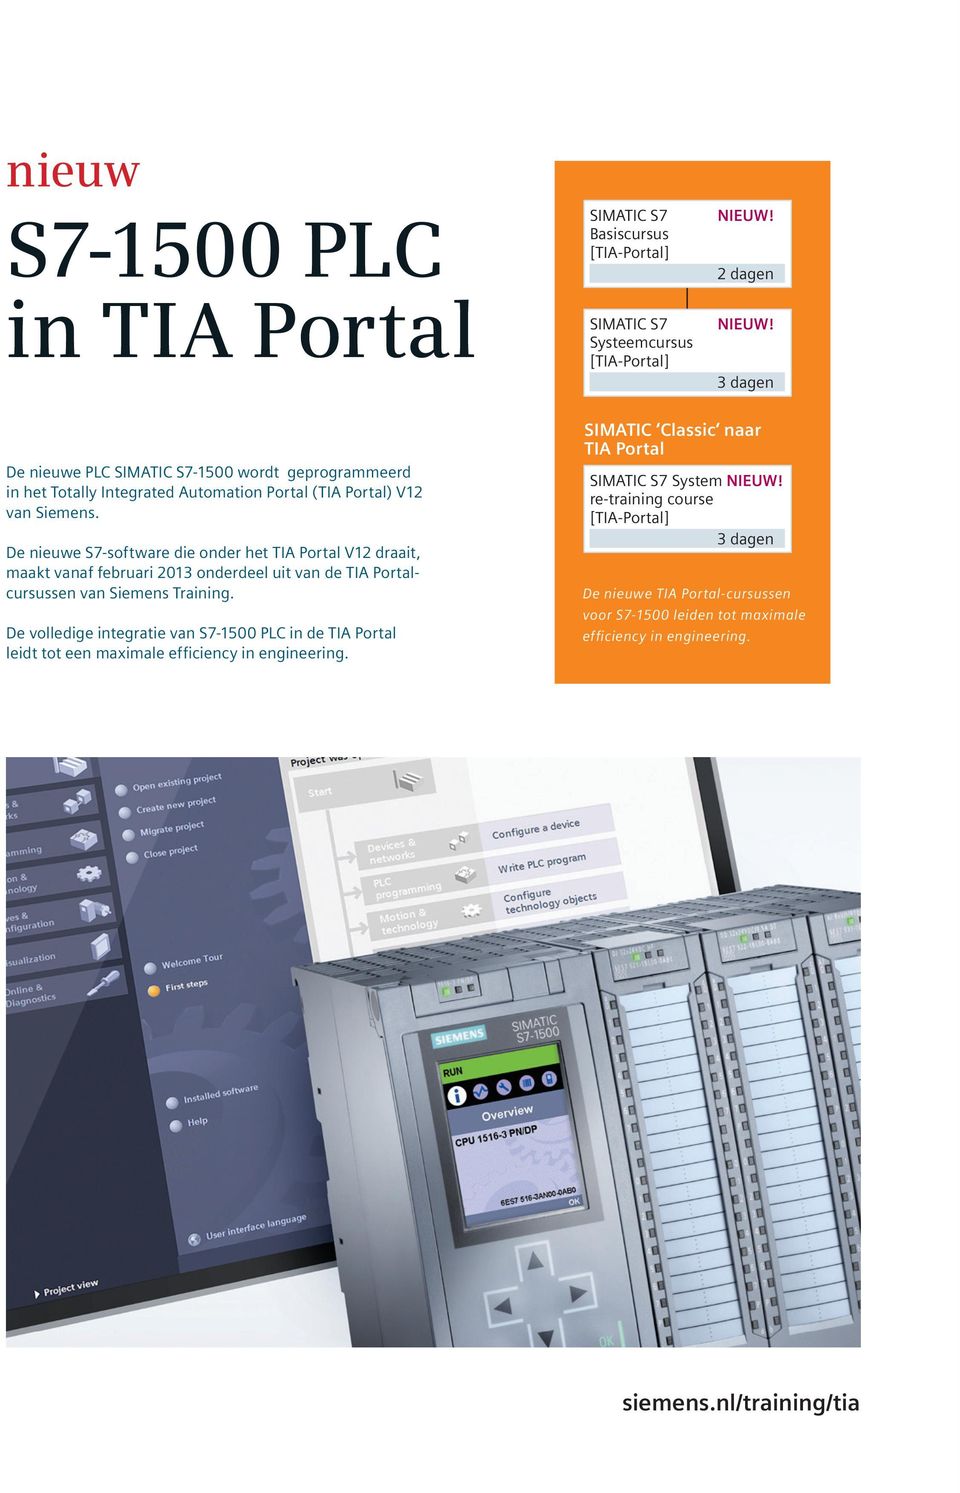 De nieuwe S7-software die onder het TIA Portal V12 draait, maakt vanaf februari 2013 onderdeel uit van de TIA Portalcursussen van Siemens Training.